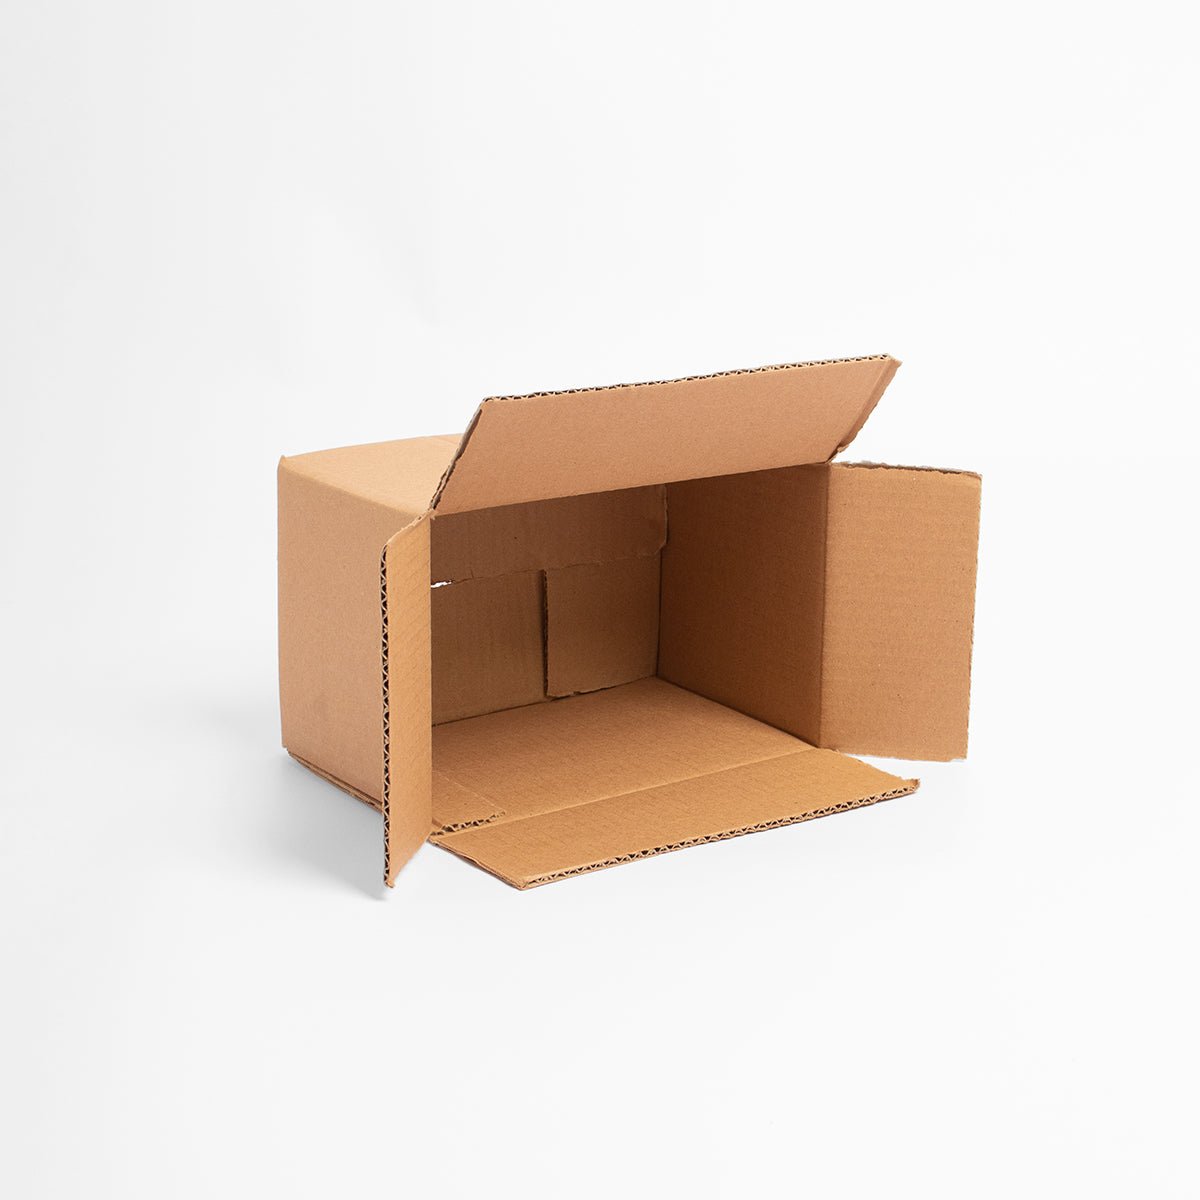 Caja de Cartón - 35 x 25 x 15 cm - Rectangular - Skyboxes México